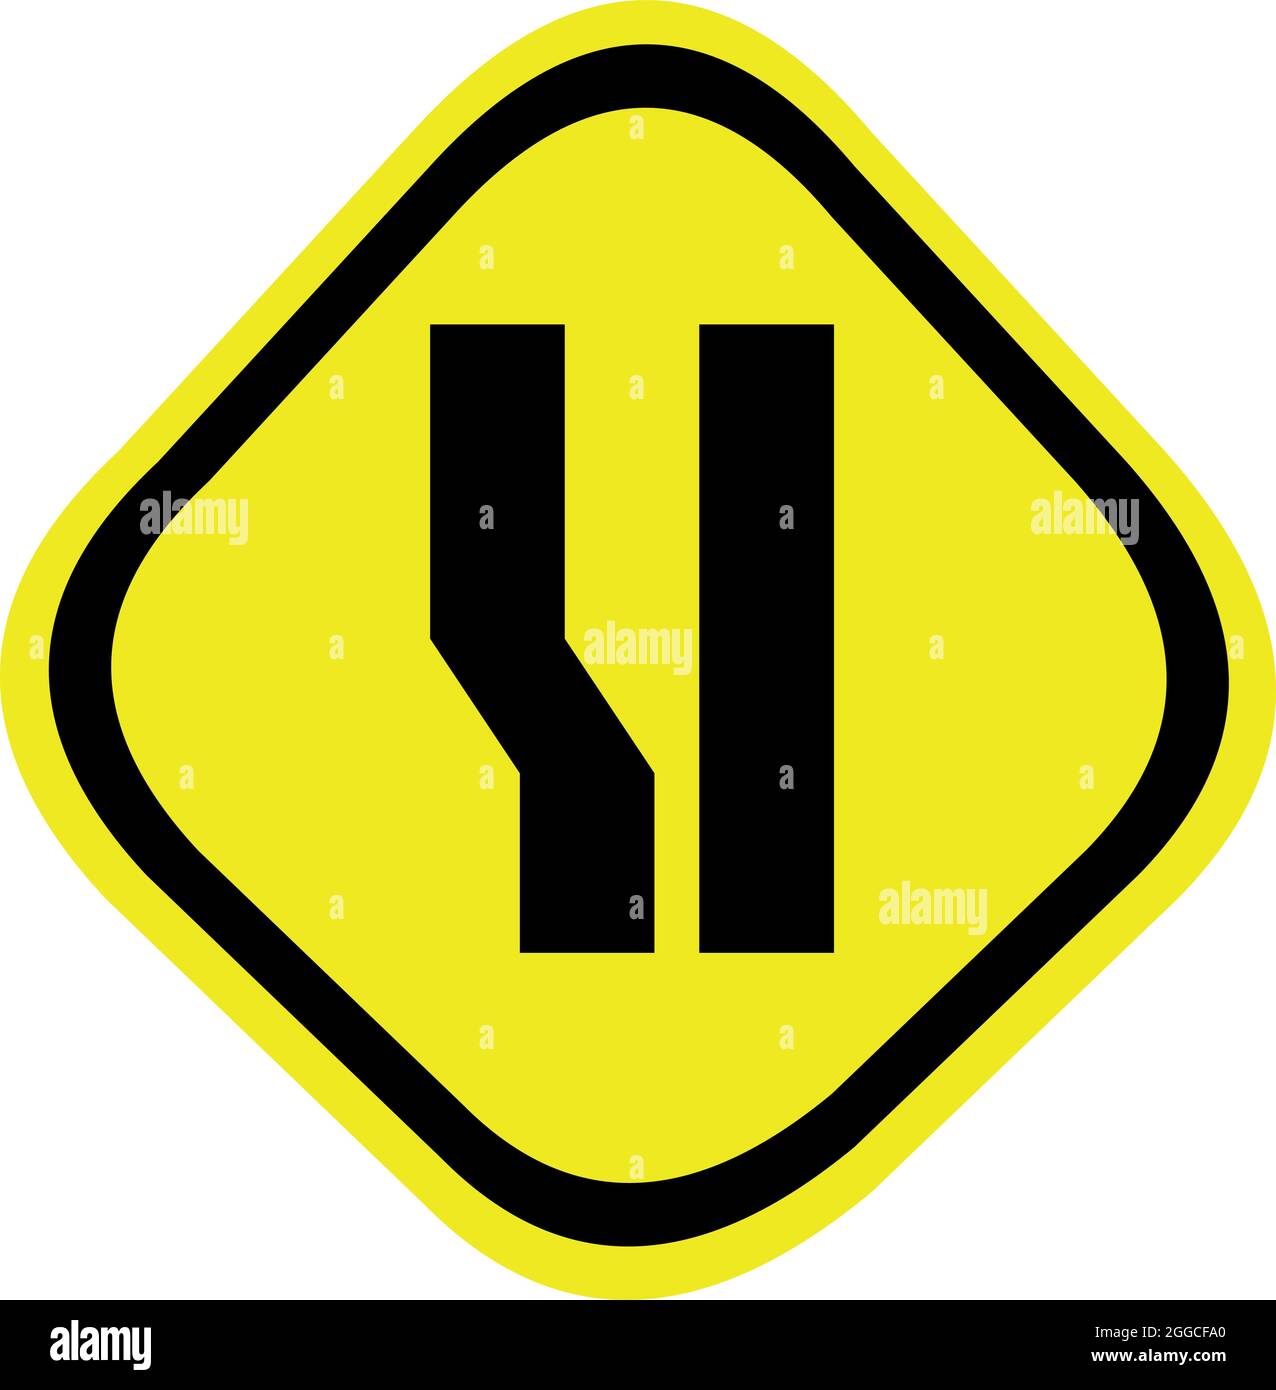 Illustrazione vettoriale della diffusione laterale sinistra del segnale di traffico Illustrazione Vettoriale